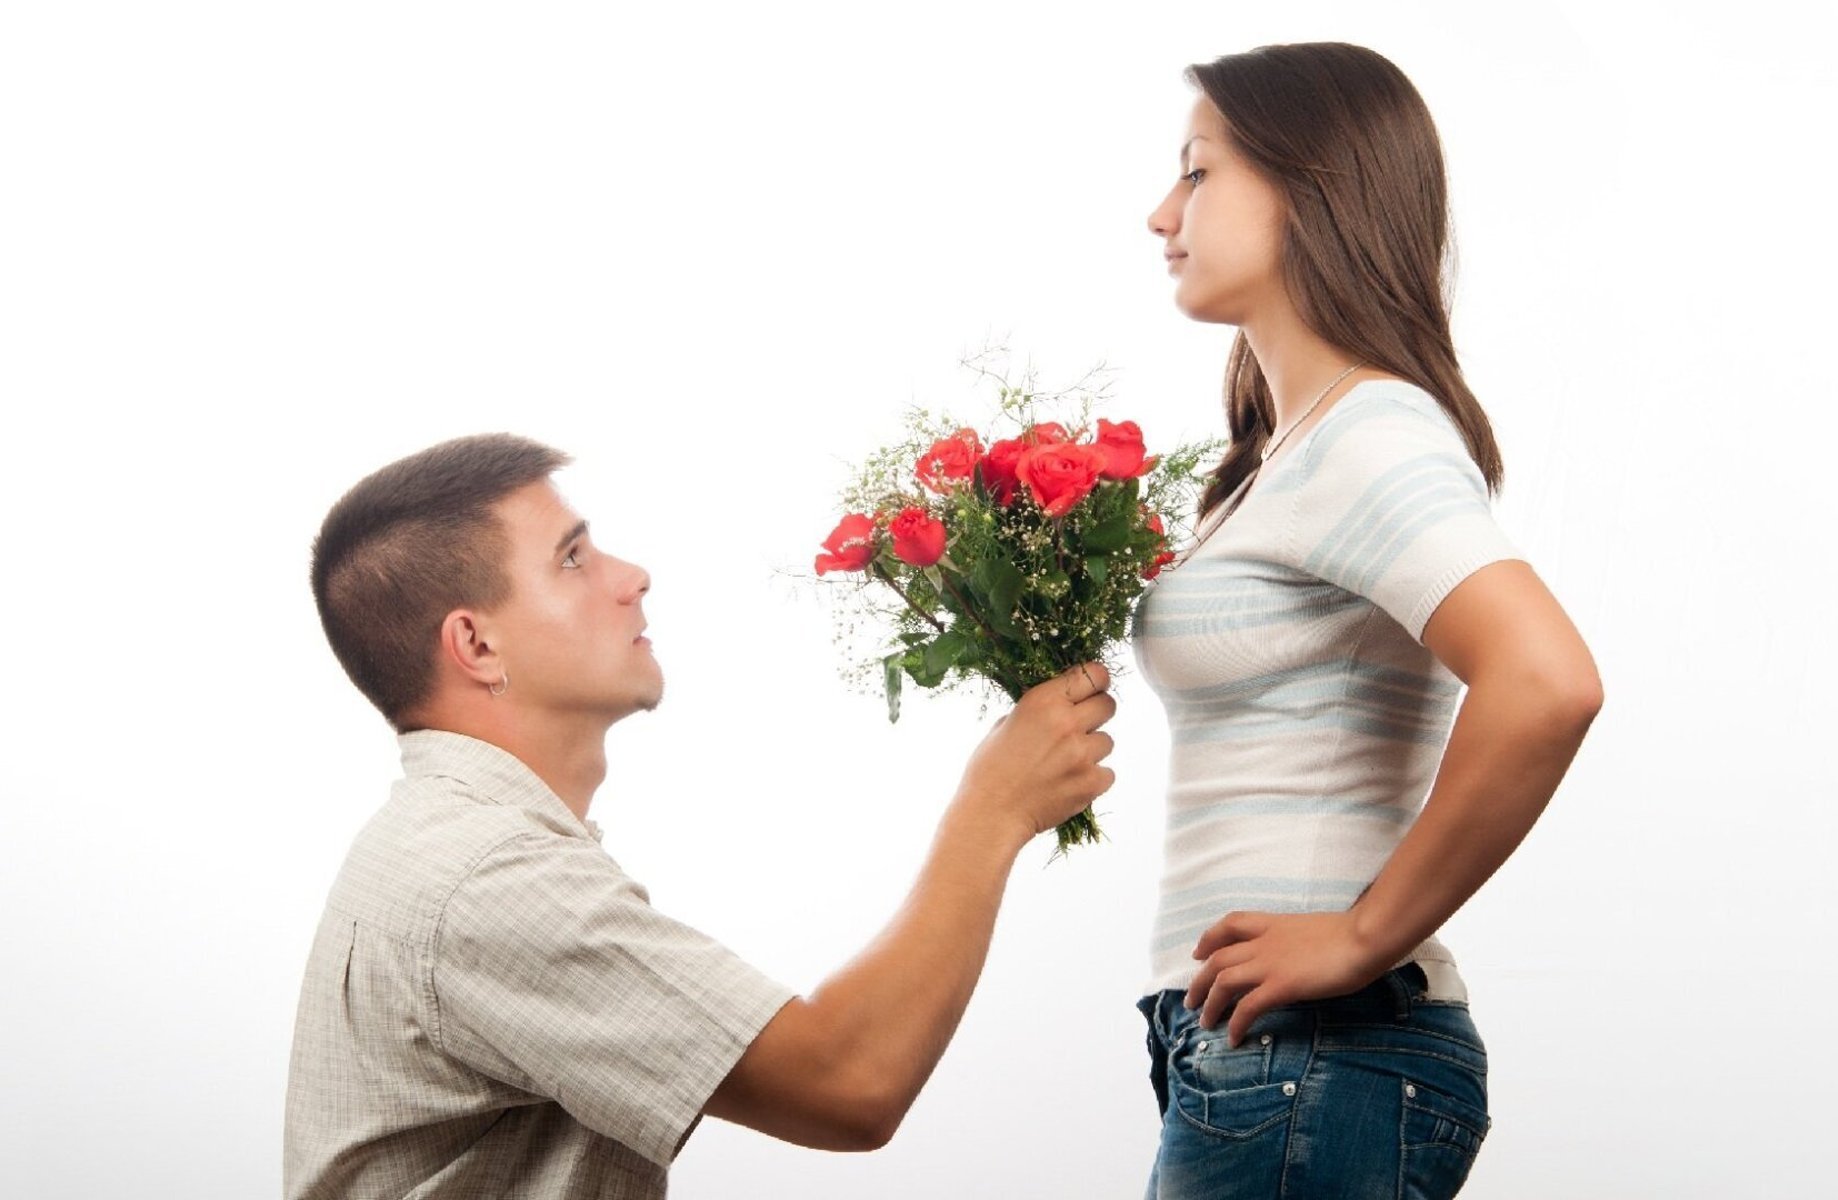 Любовь дарит мужчинам. Парень даритдеаушке цветы. Парень дарит девушке цветы. Девушке дарят цветы. Мужчина дарит цветы женщине.